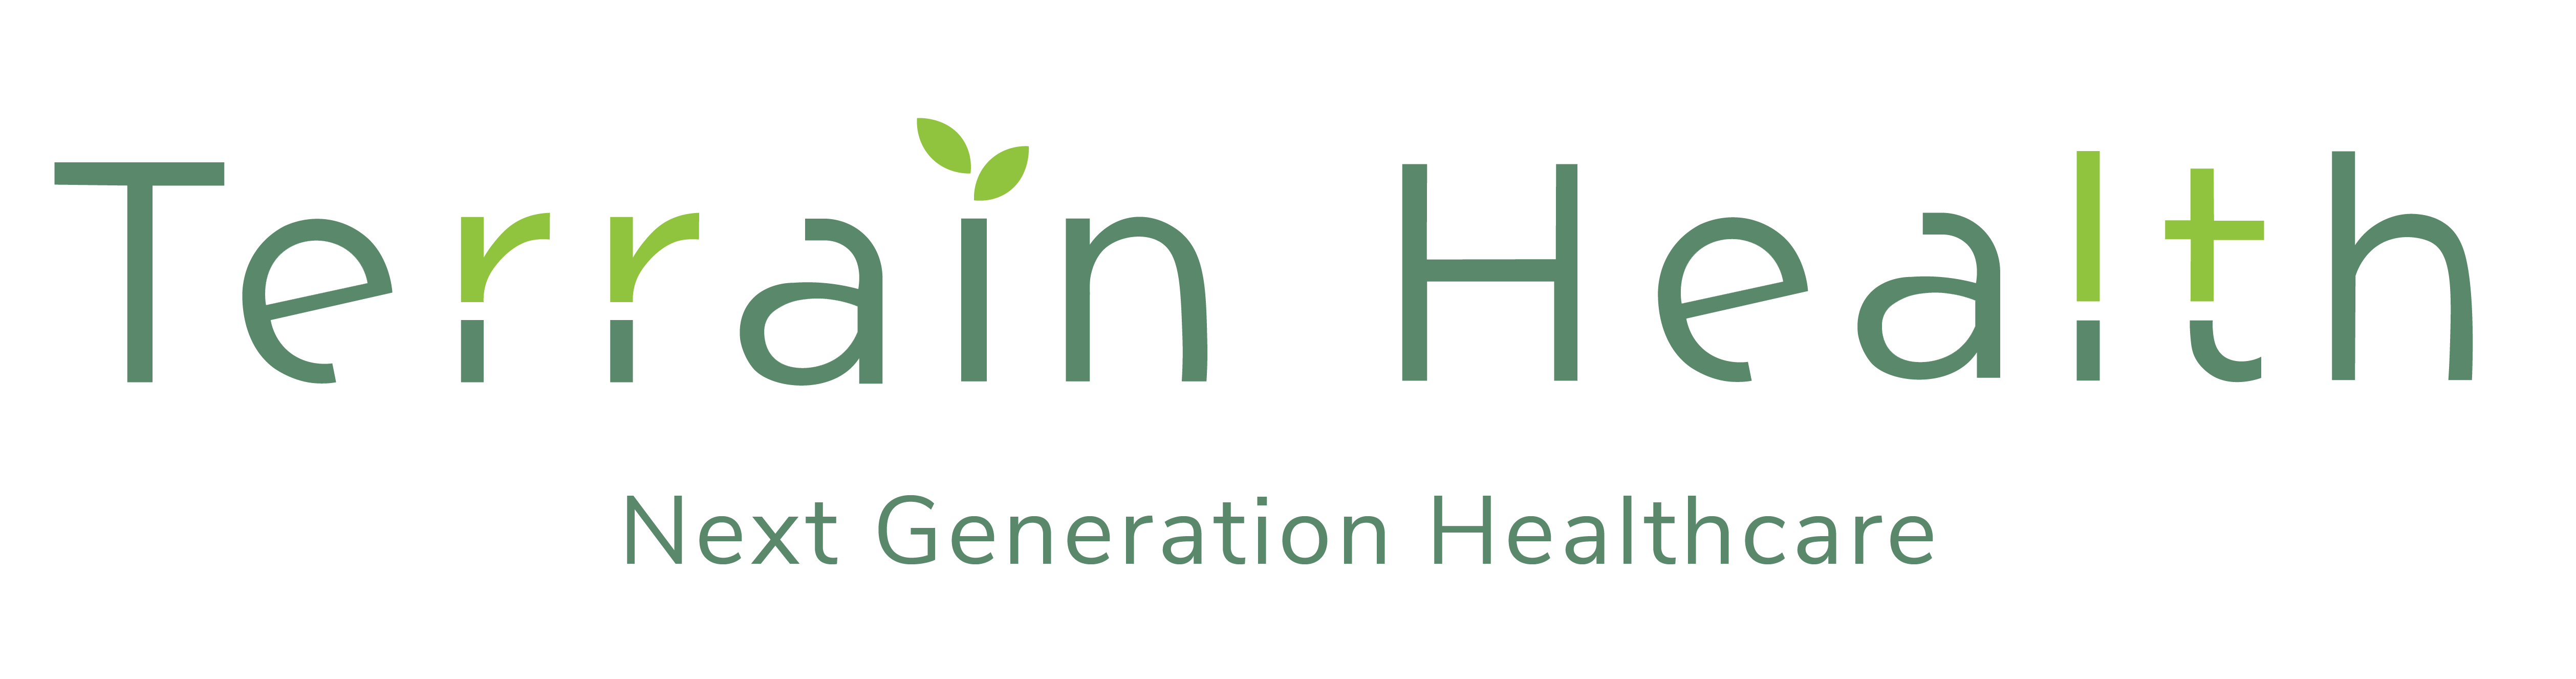 logo design - Terrain Health-01